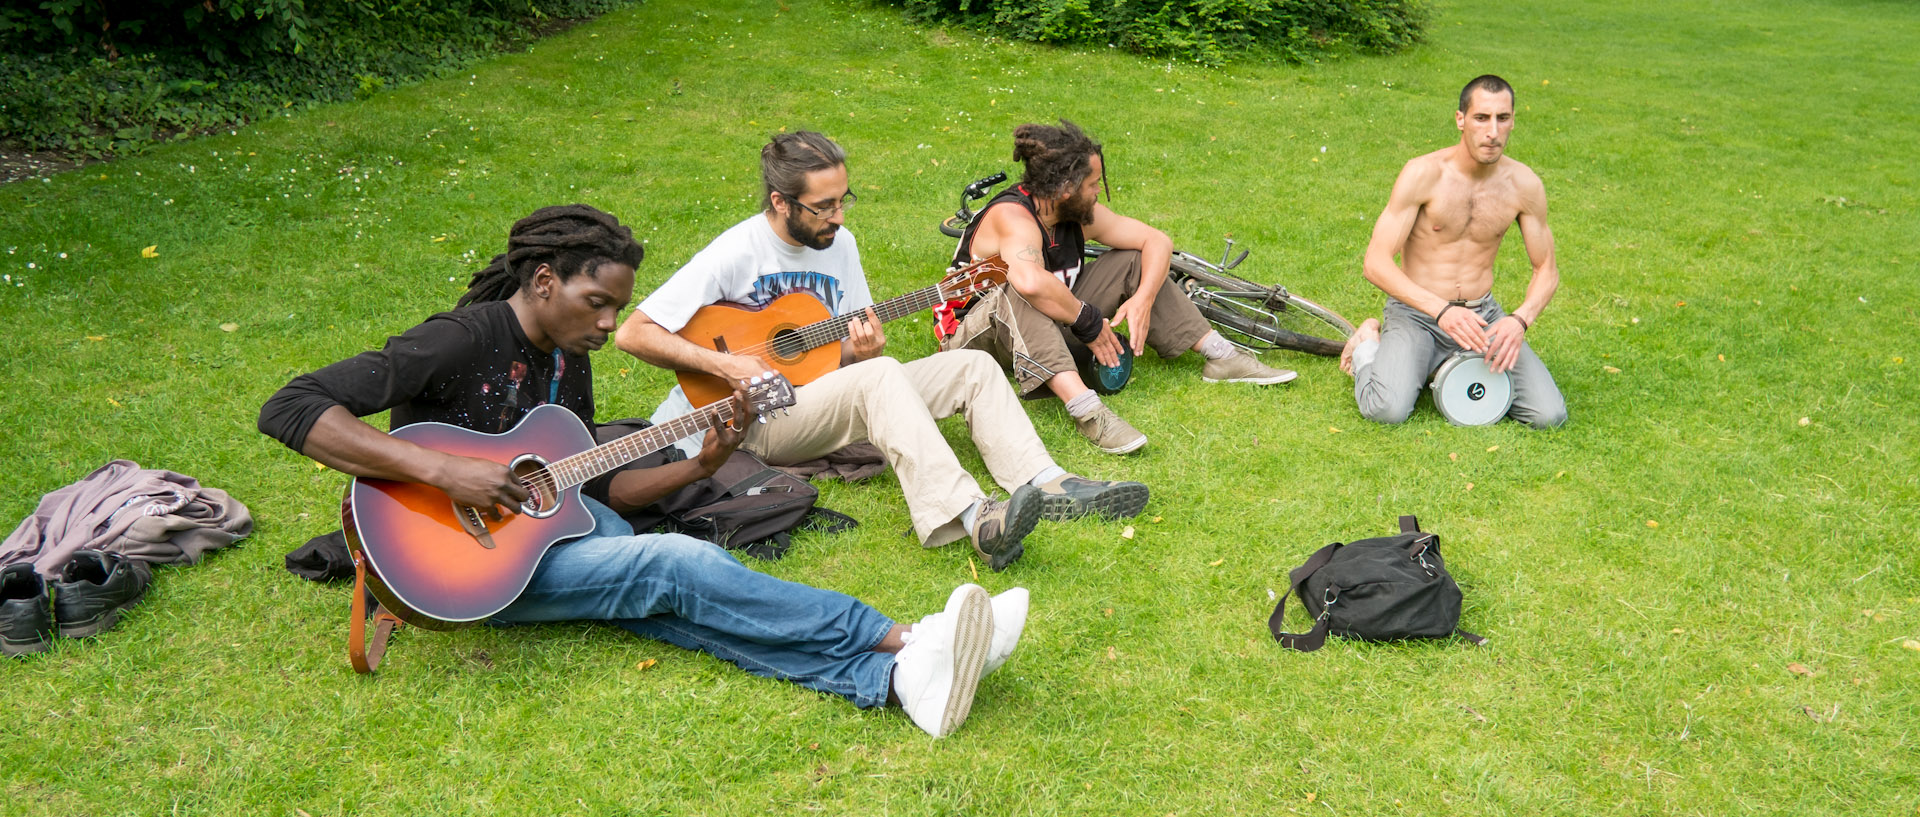 Jeunes musiciens dans l'herbe, jardin Vauban, à Lille.